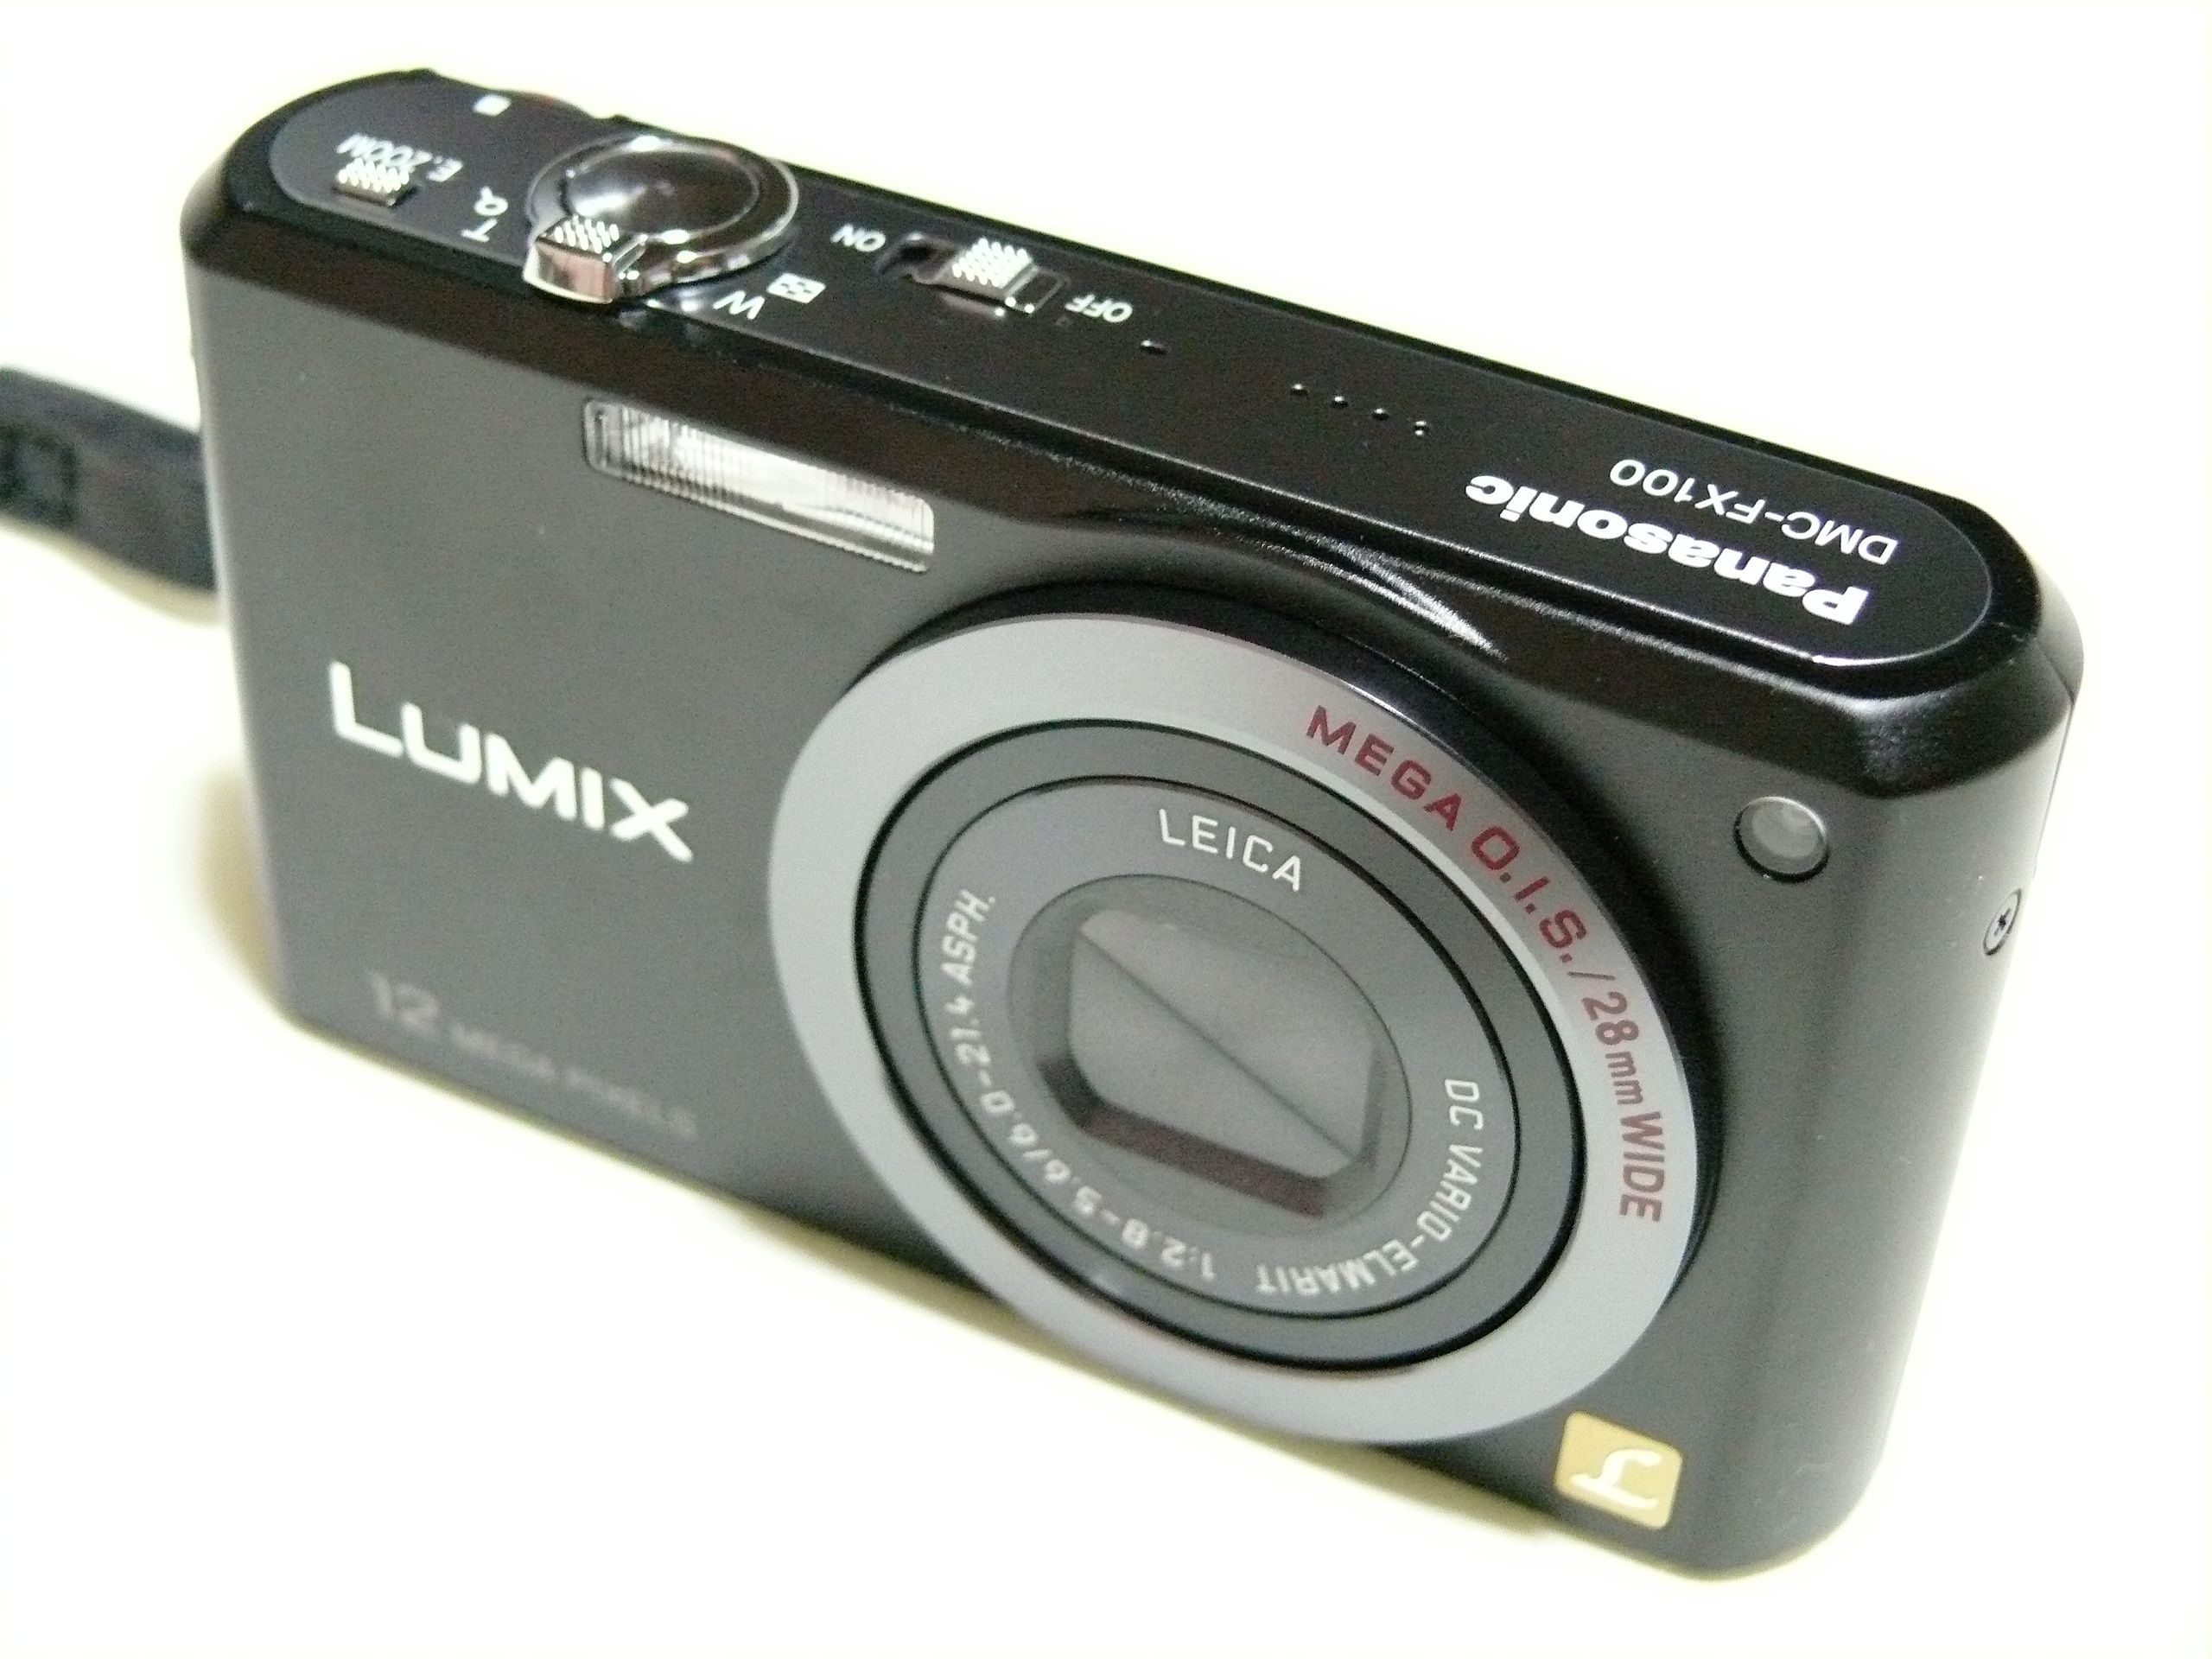  LUMIX FX DMC-FX100-S